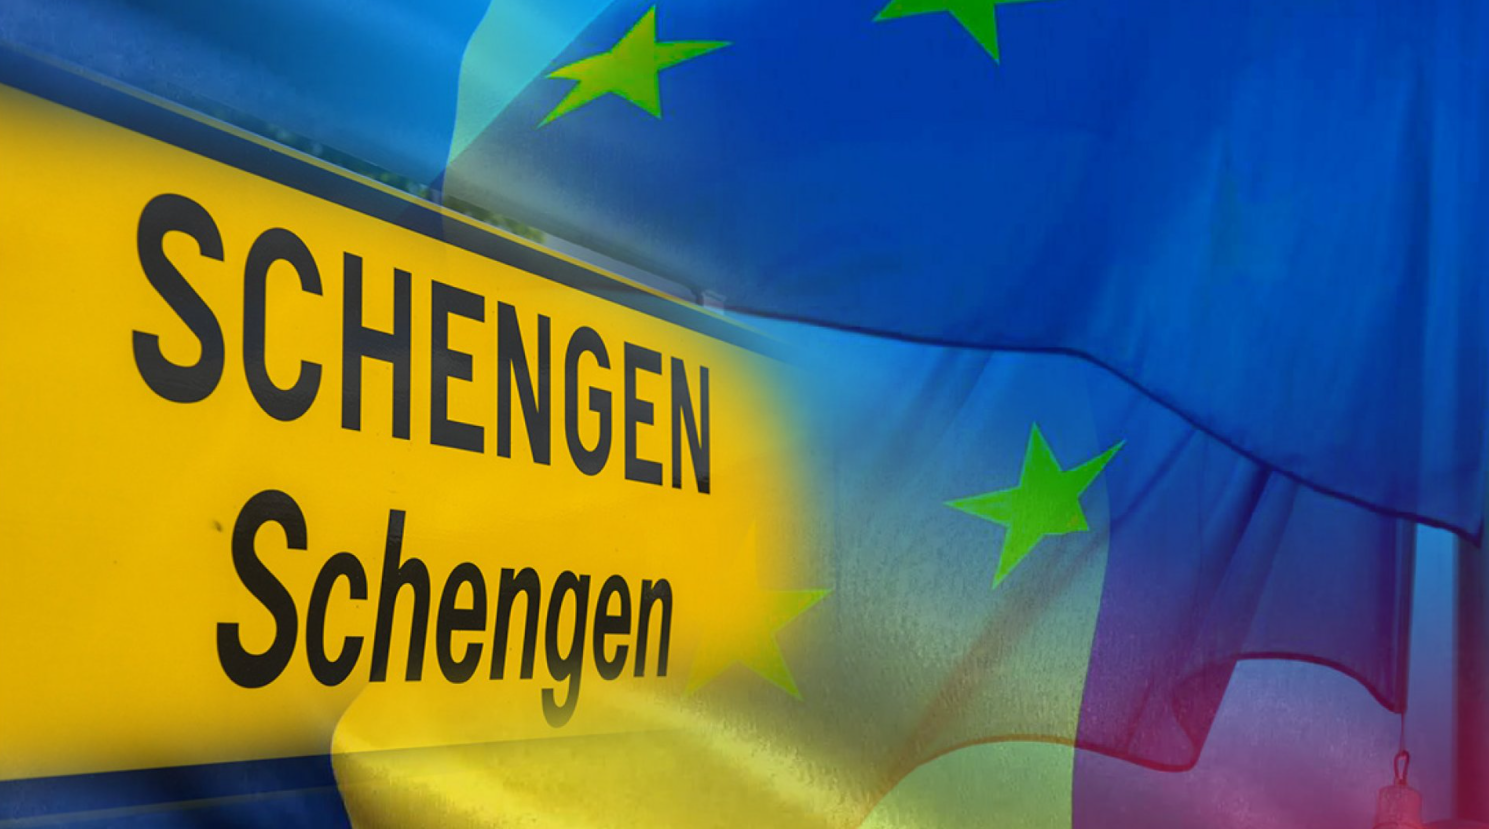 Extinderea spațiului Schengen este susținută de europarlamentari austrieci, în ciuda opoziției ministrului austriac de Interne